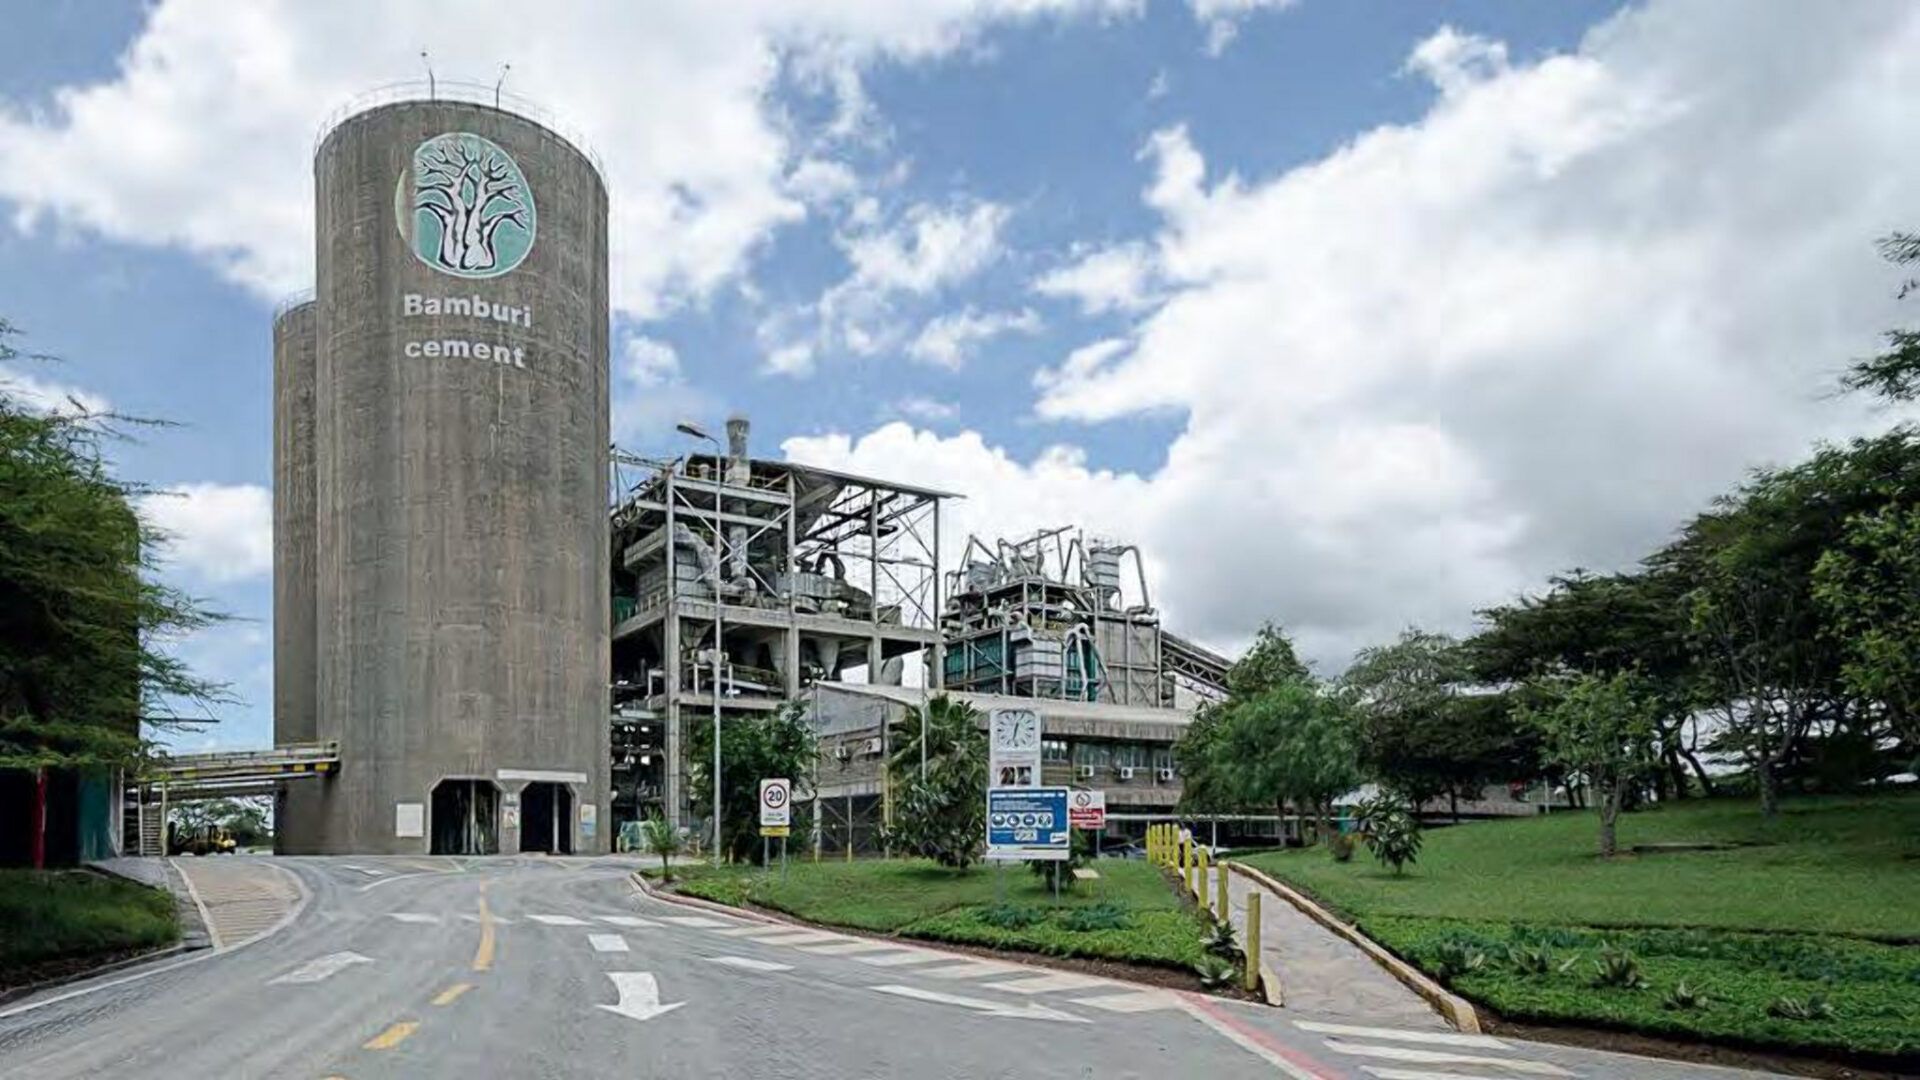 Amsons Group Makes $180 Million Buyout Offer for Kenya's Bamburi Cement